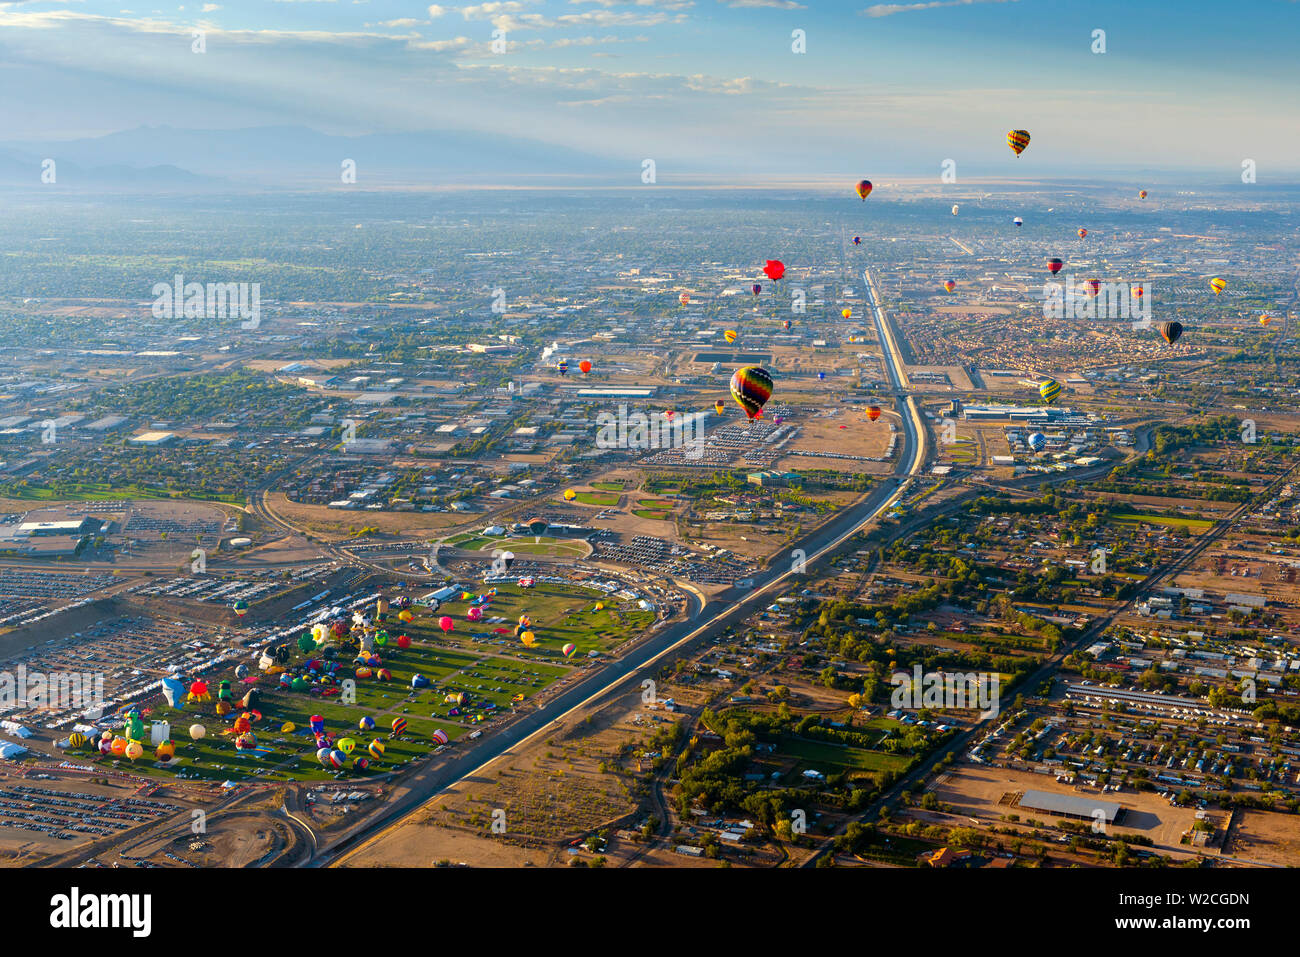 USA, New Mexico, Albuquerque, Albuquerque International Balloon Fiesta Stockfoto